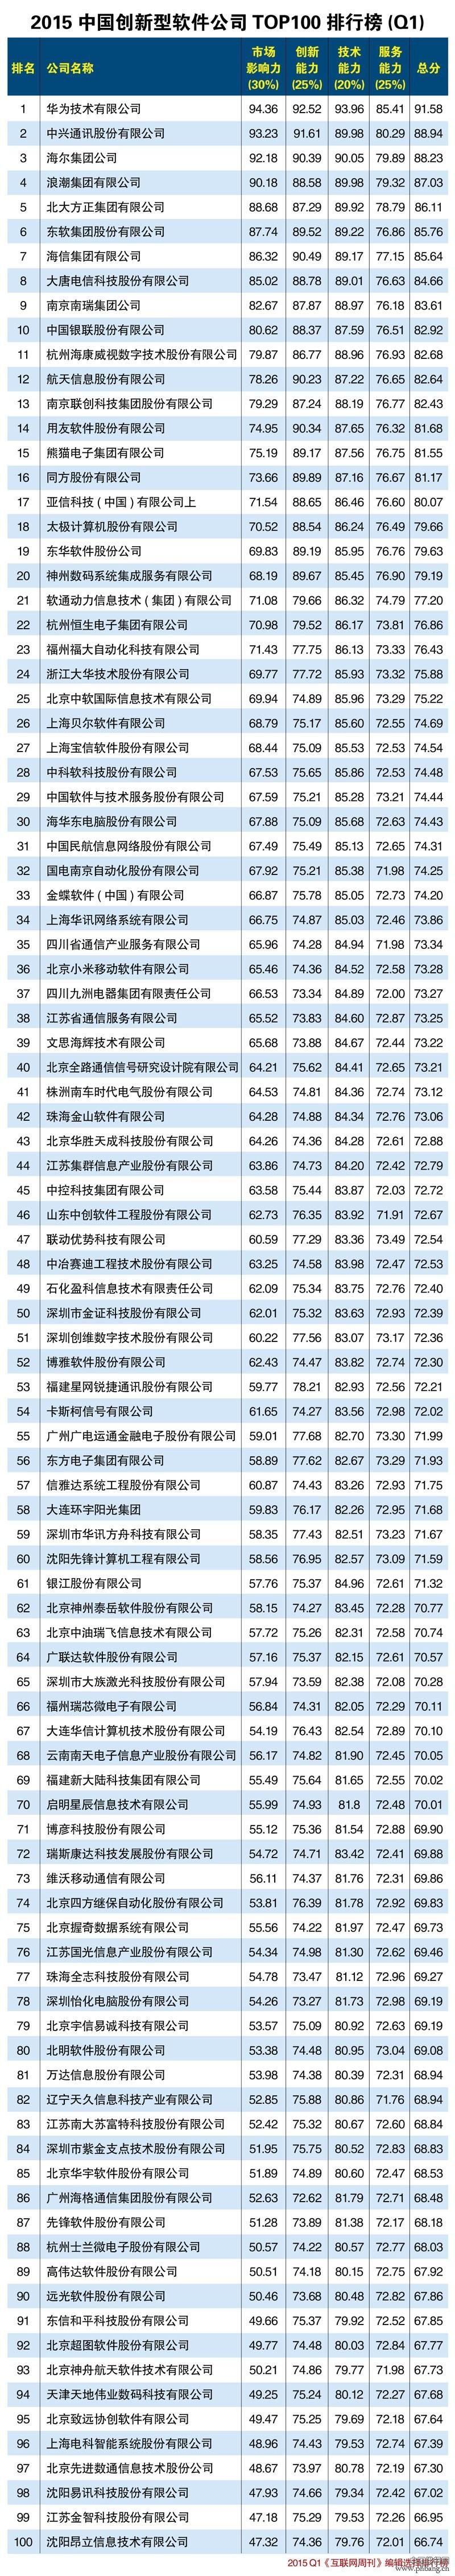 2015中国创新型软件公司TOP100排行榜